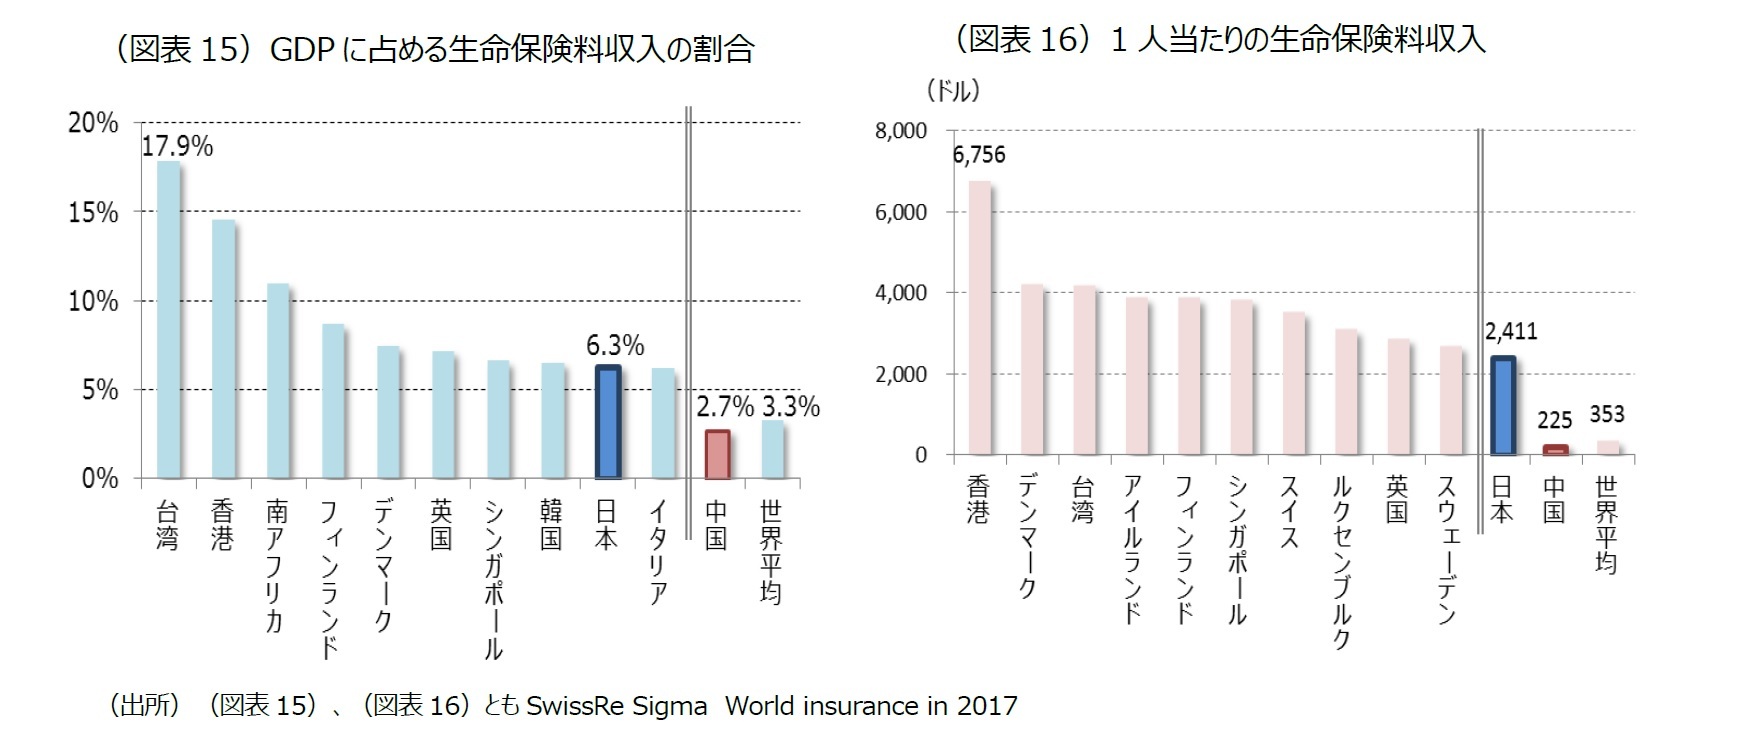 （図表15）GDP に占める生命保険料収入の割合/（図表16）1 人当たりの生命保険料収入